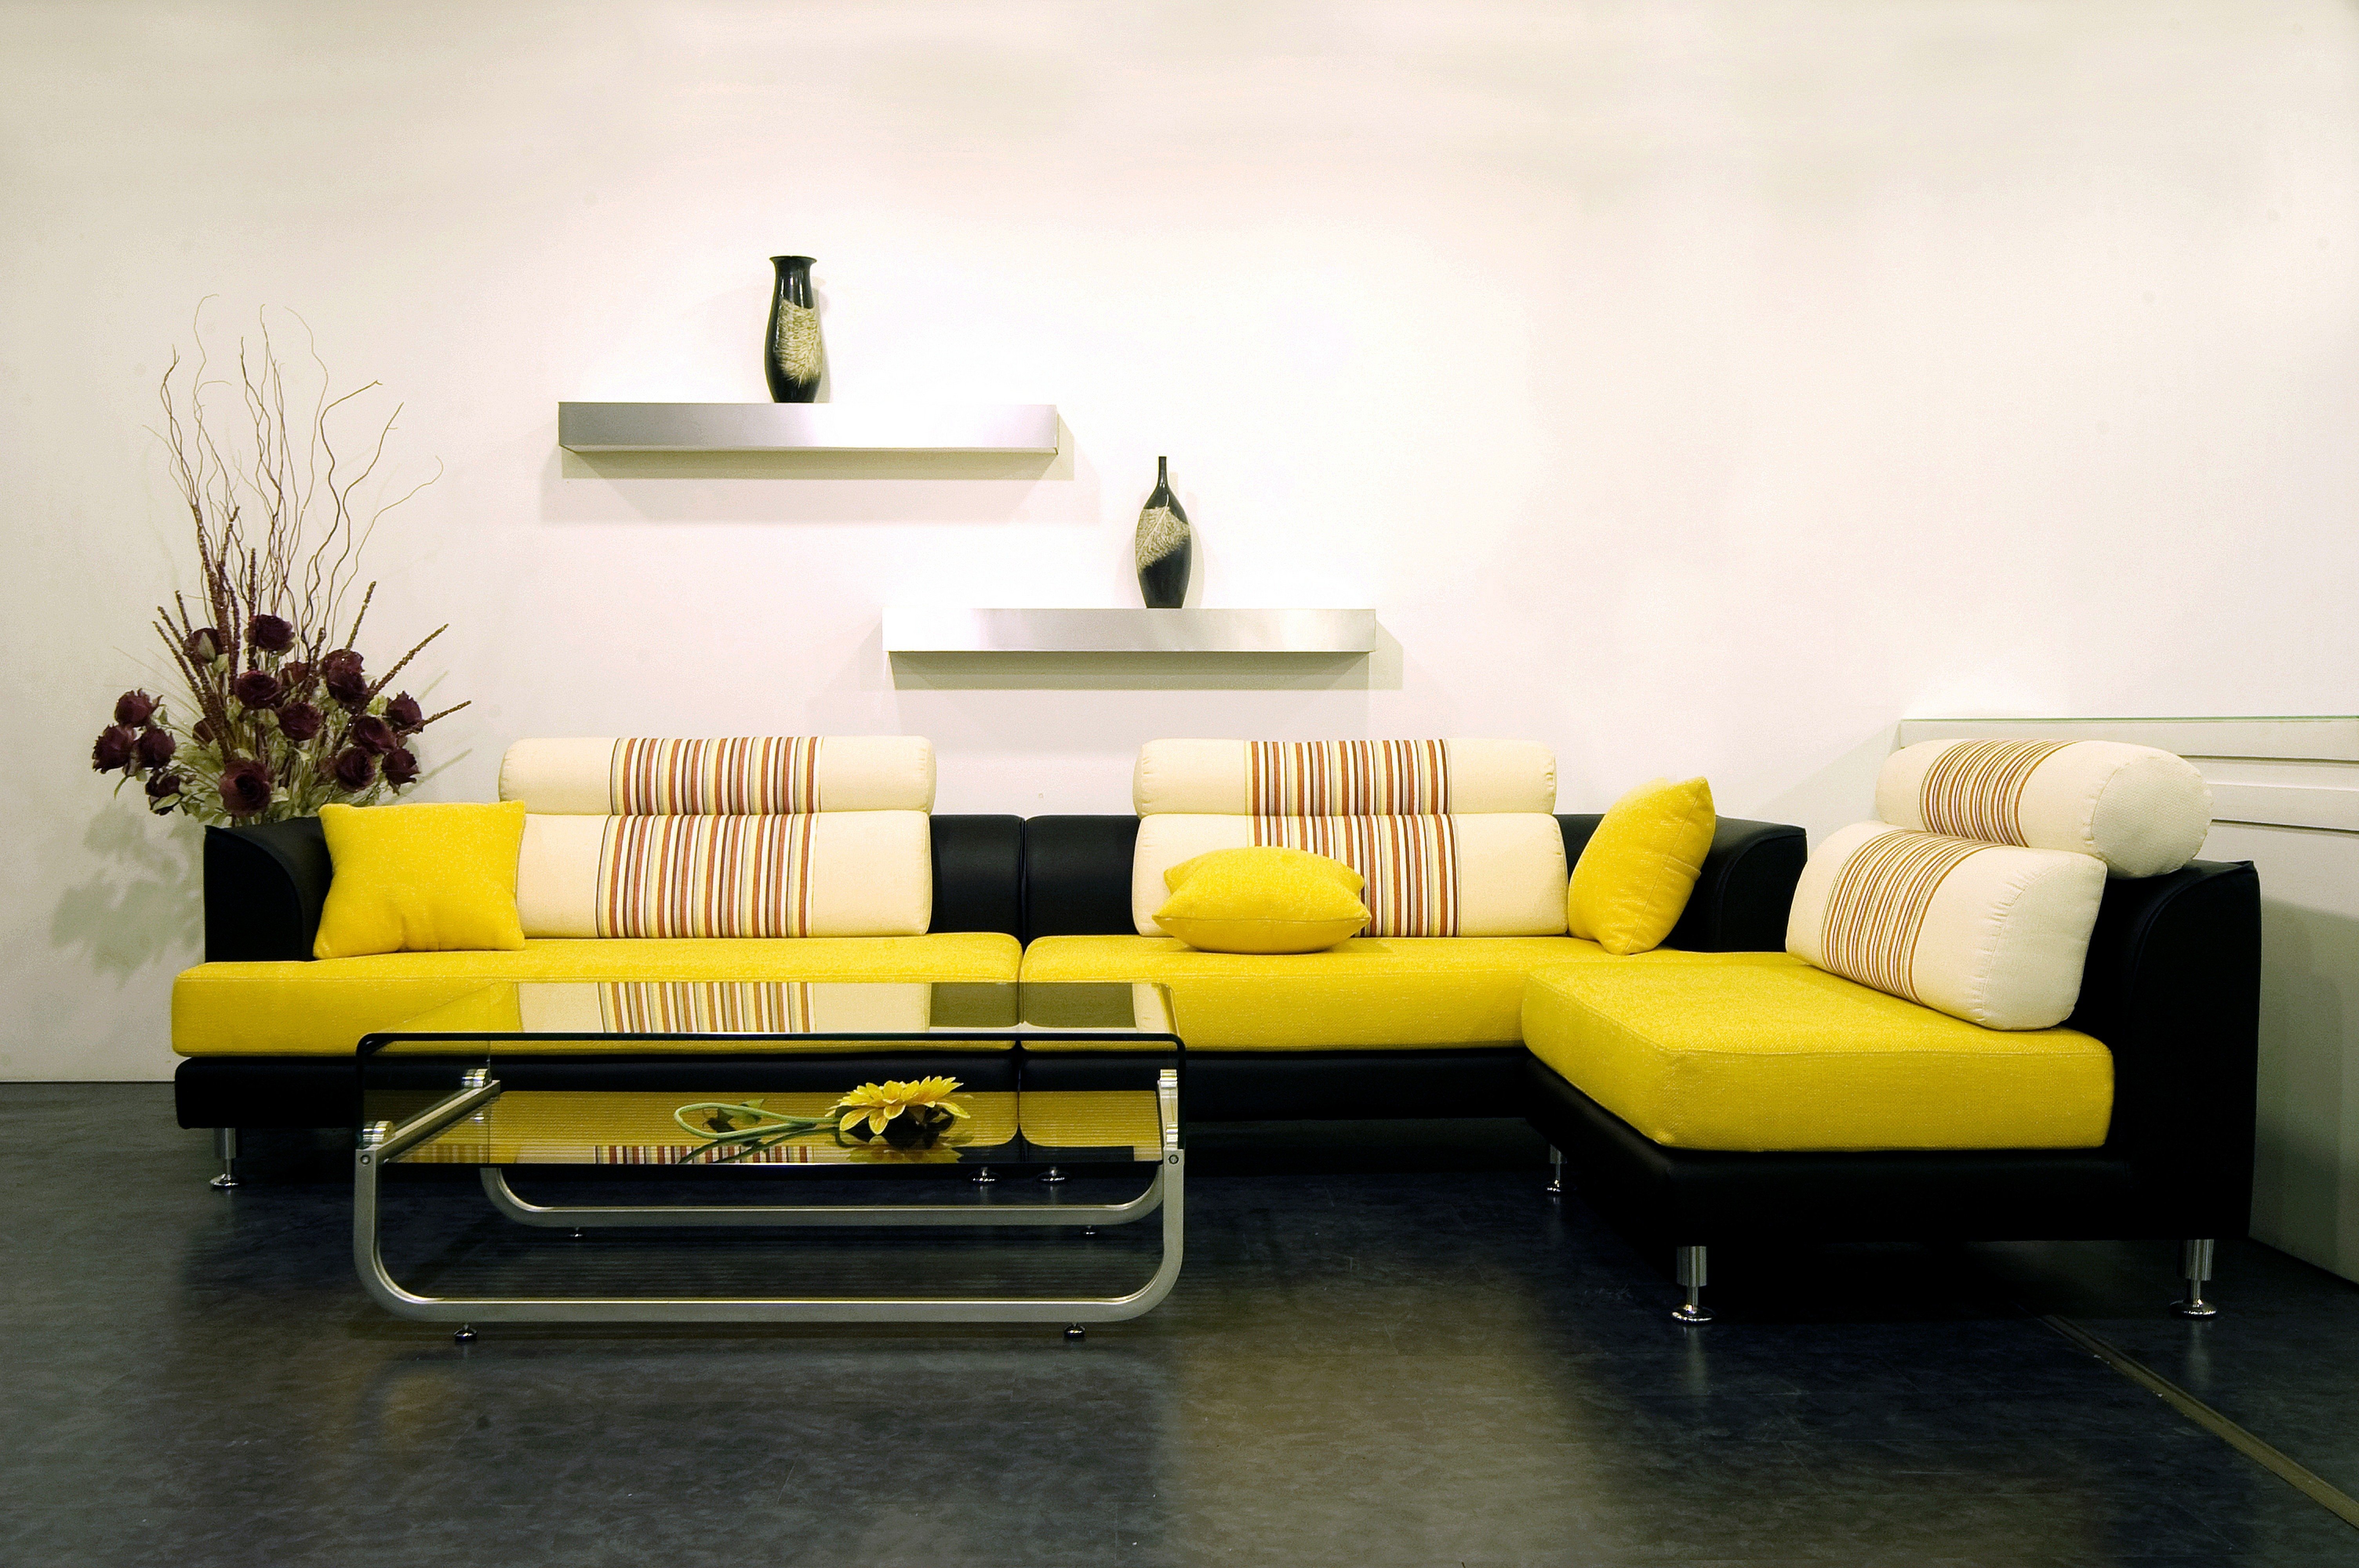 Sofa pictures. Диван в интерьере. Красивый диван в интерьере. Яркий диван в интерьере. Желтый диван в интерьере.